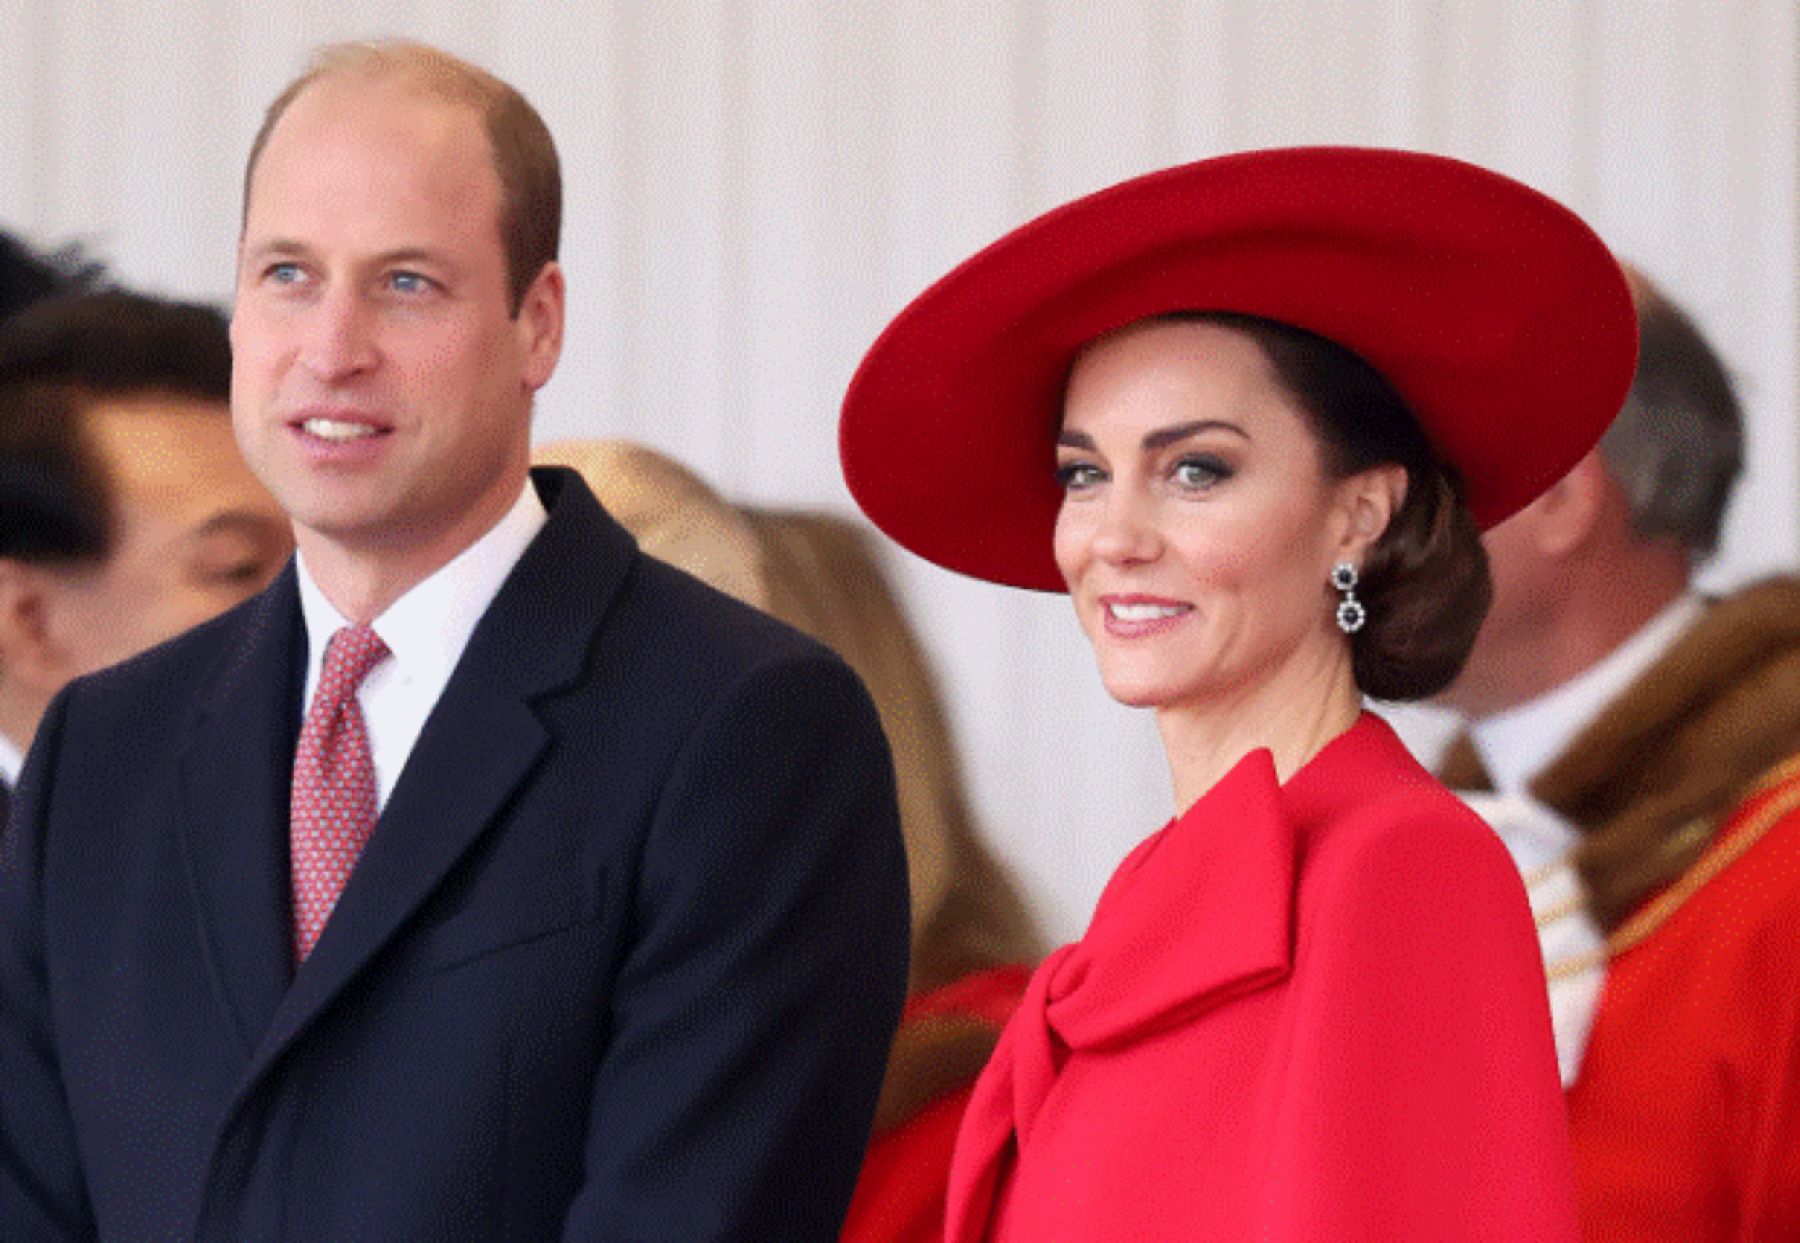 Povestea căsuței de vis a prințului William și Kate Middleton, unde prințesa se va recupera